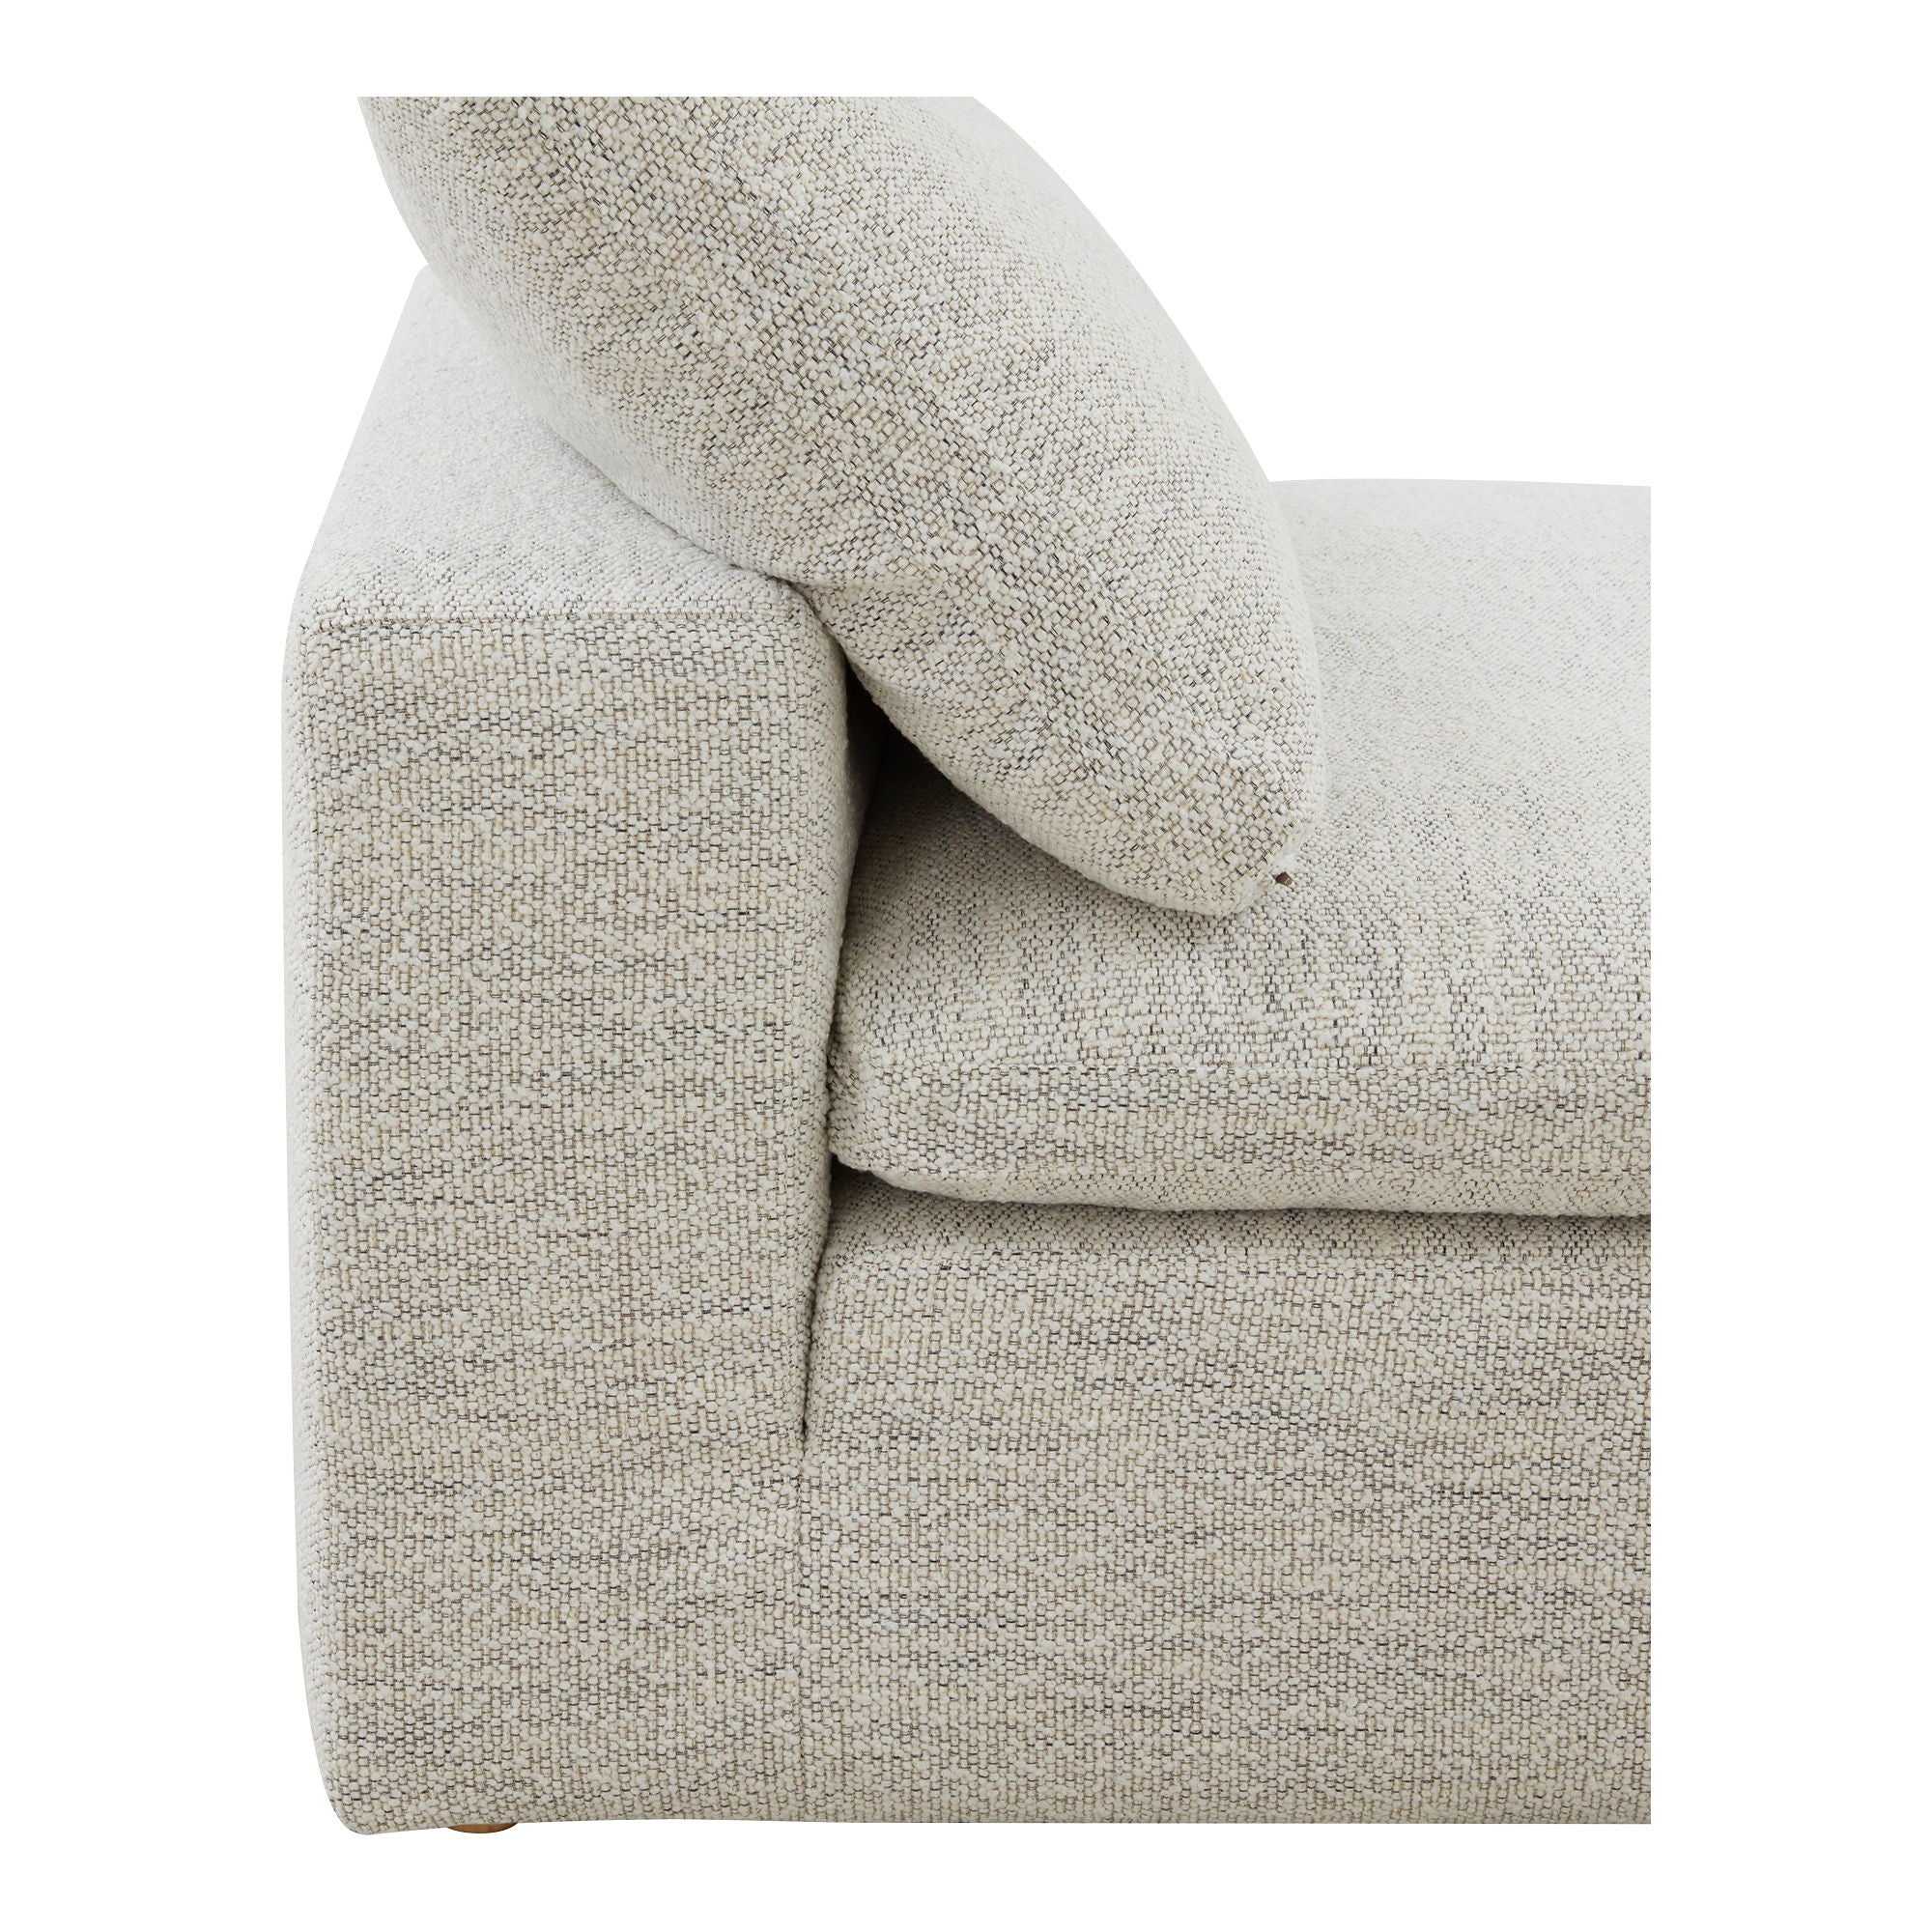 Clay - Slipper Chair - White